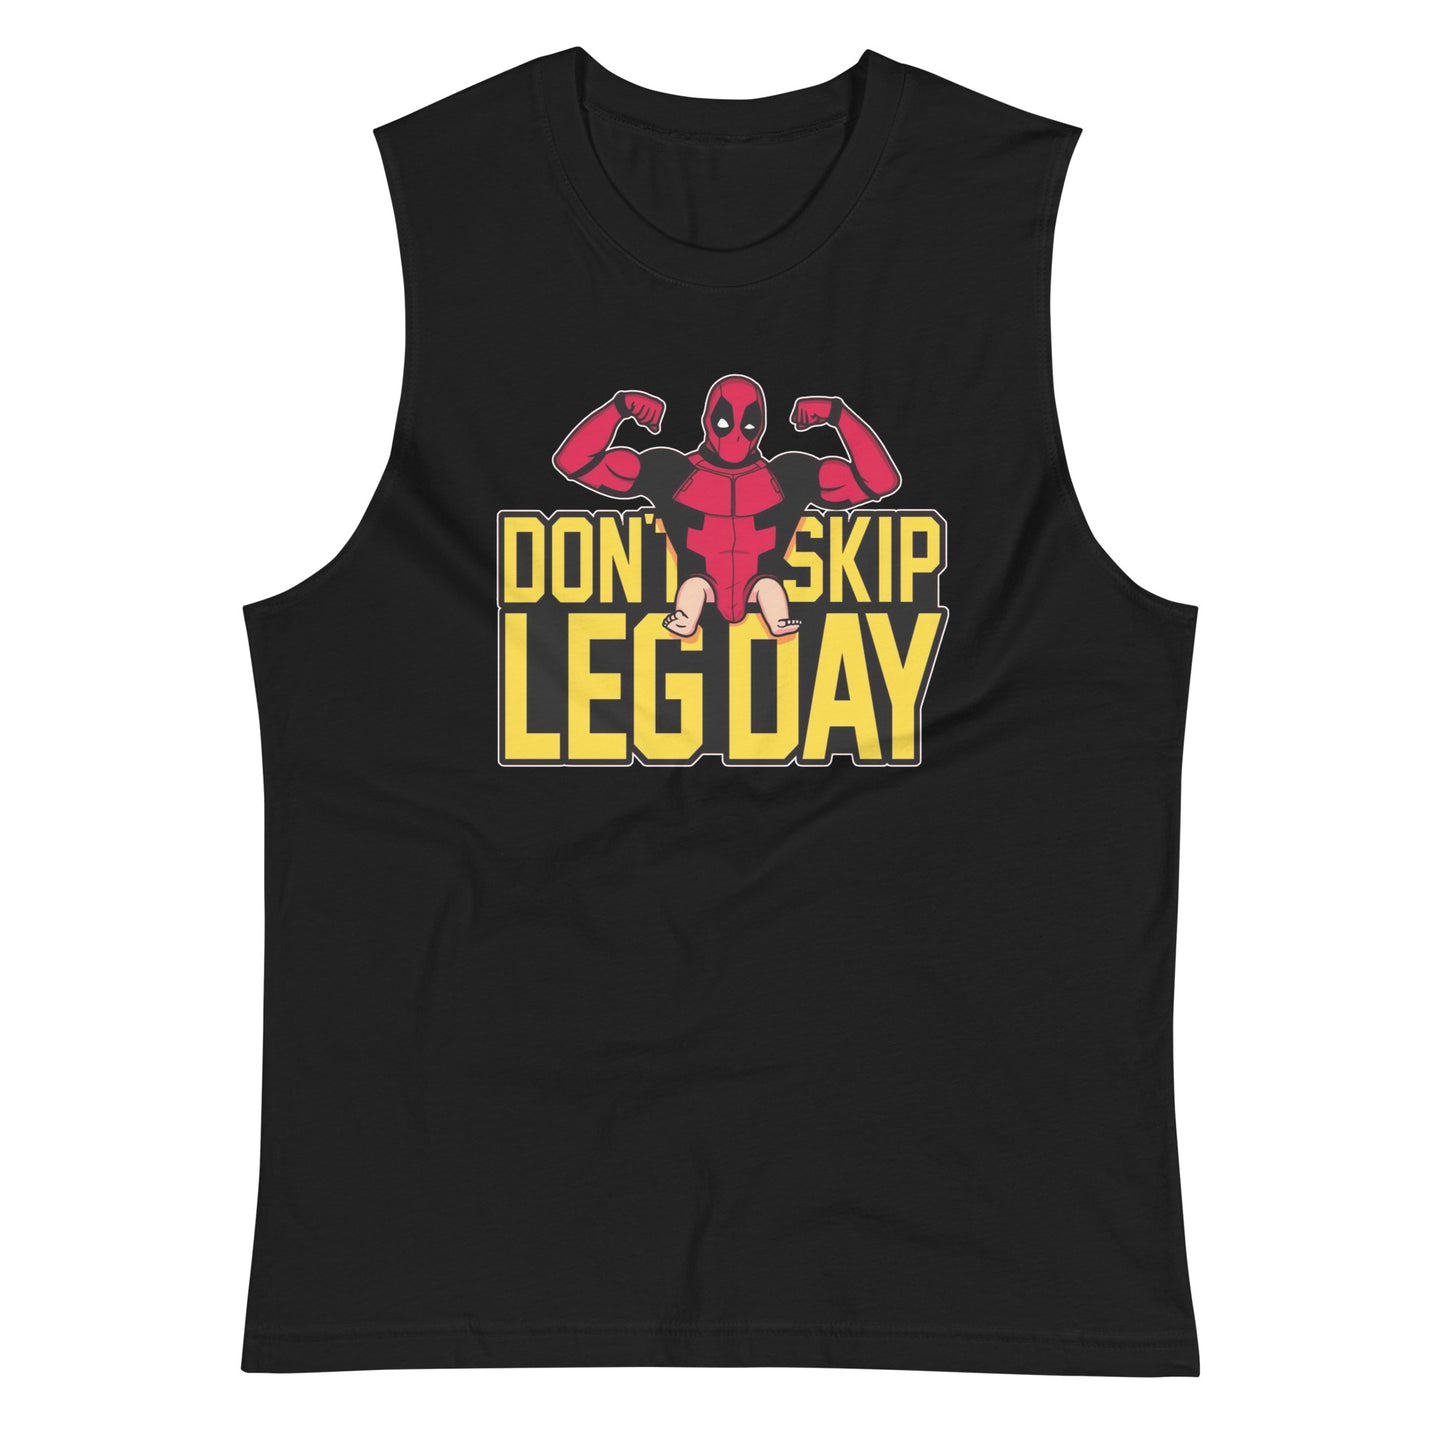 Camiseta sin mangas perfecta para entrenar, Camiseta Don't Skip Leg Day ordena en línea y experimenta el mejor servicio al cliente. 